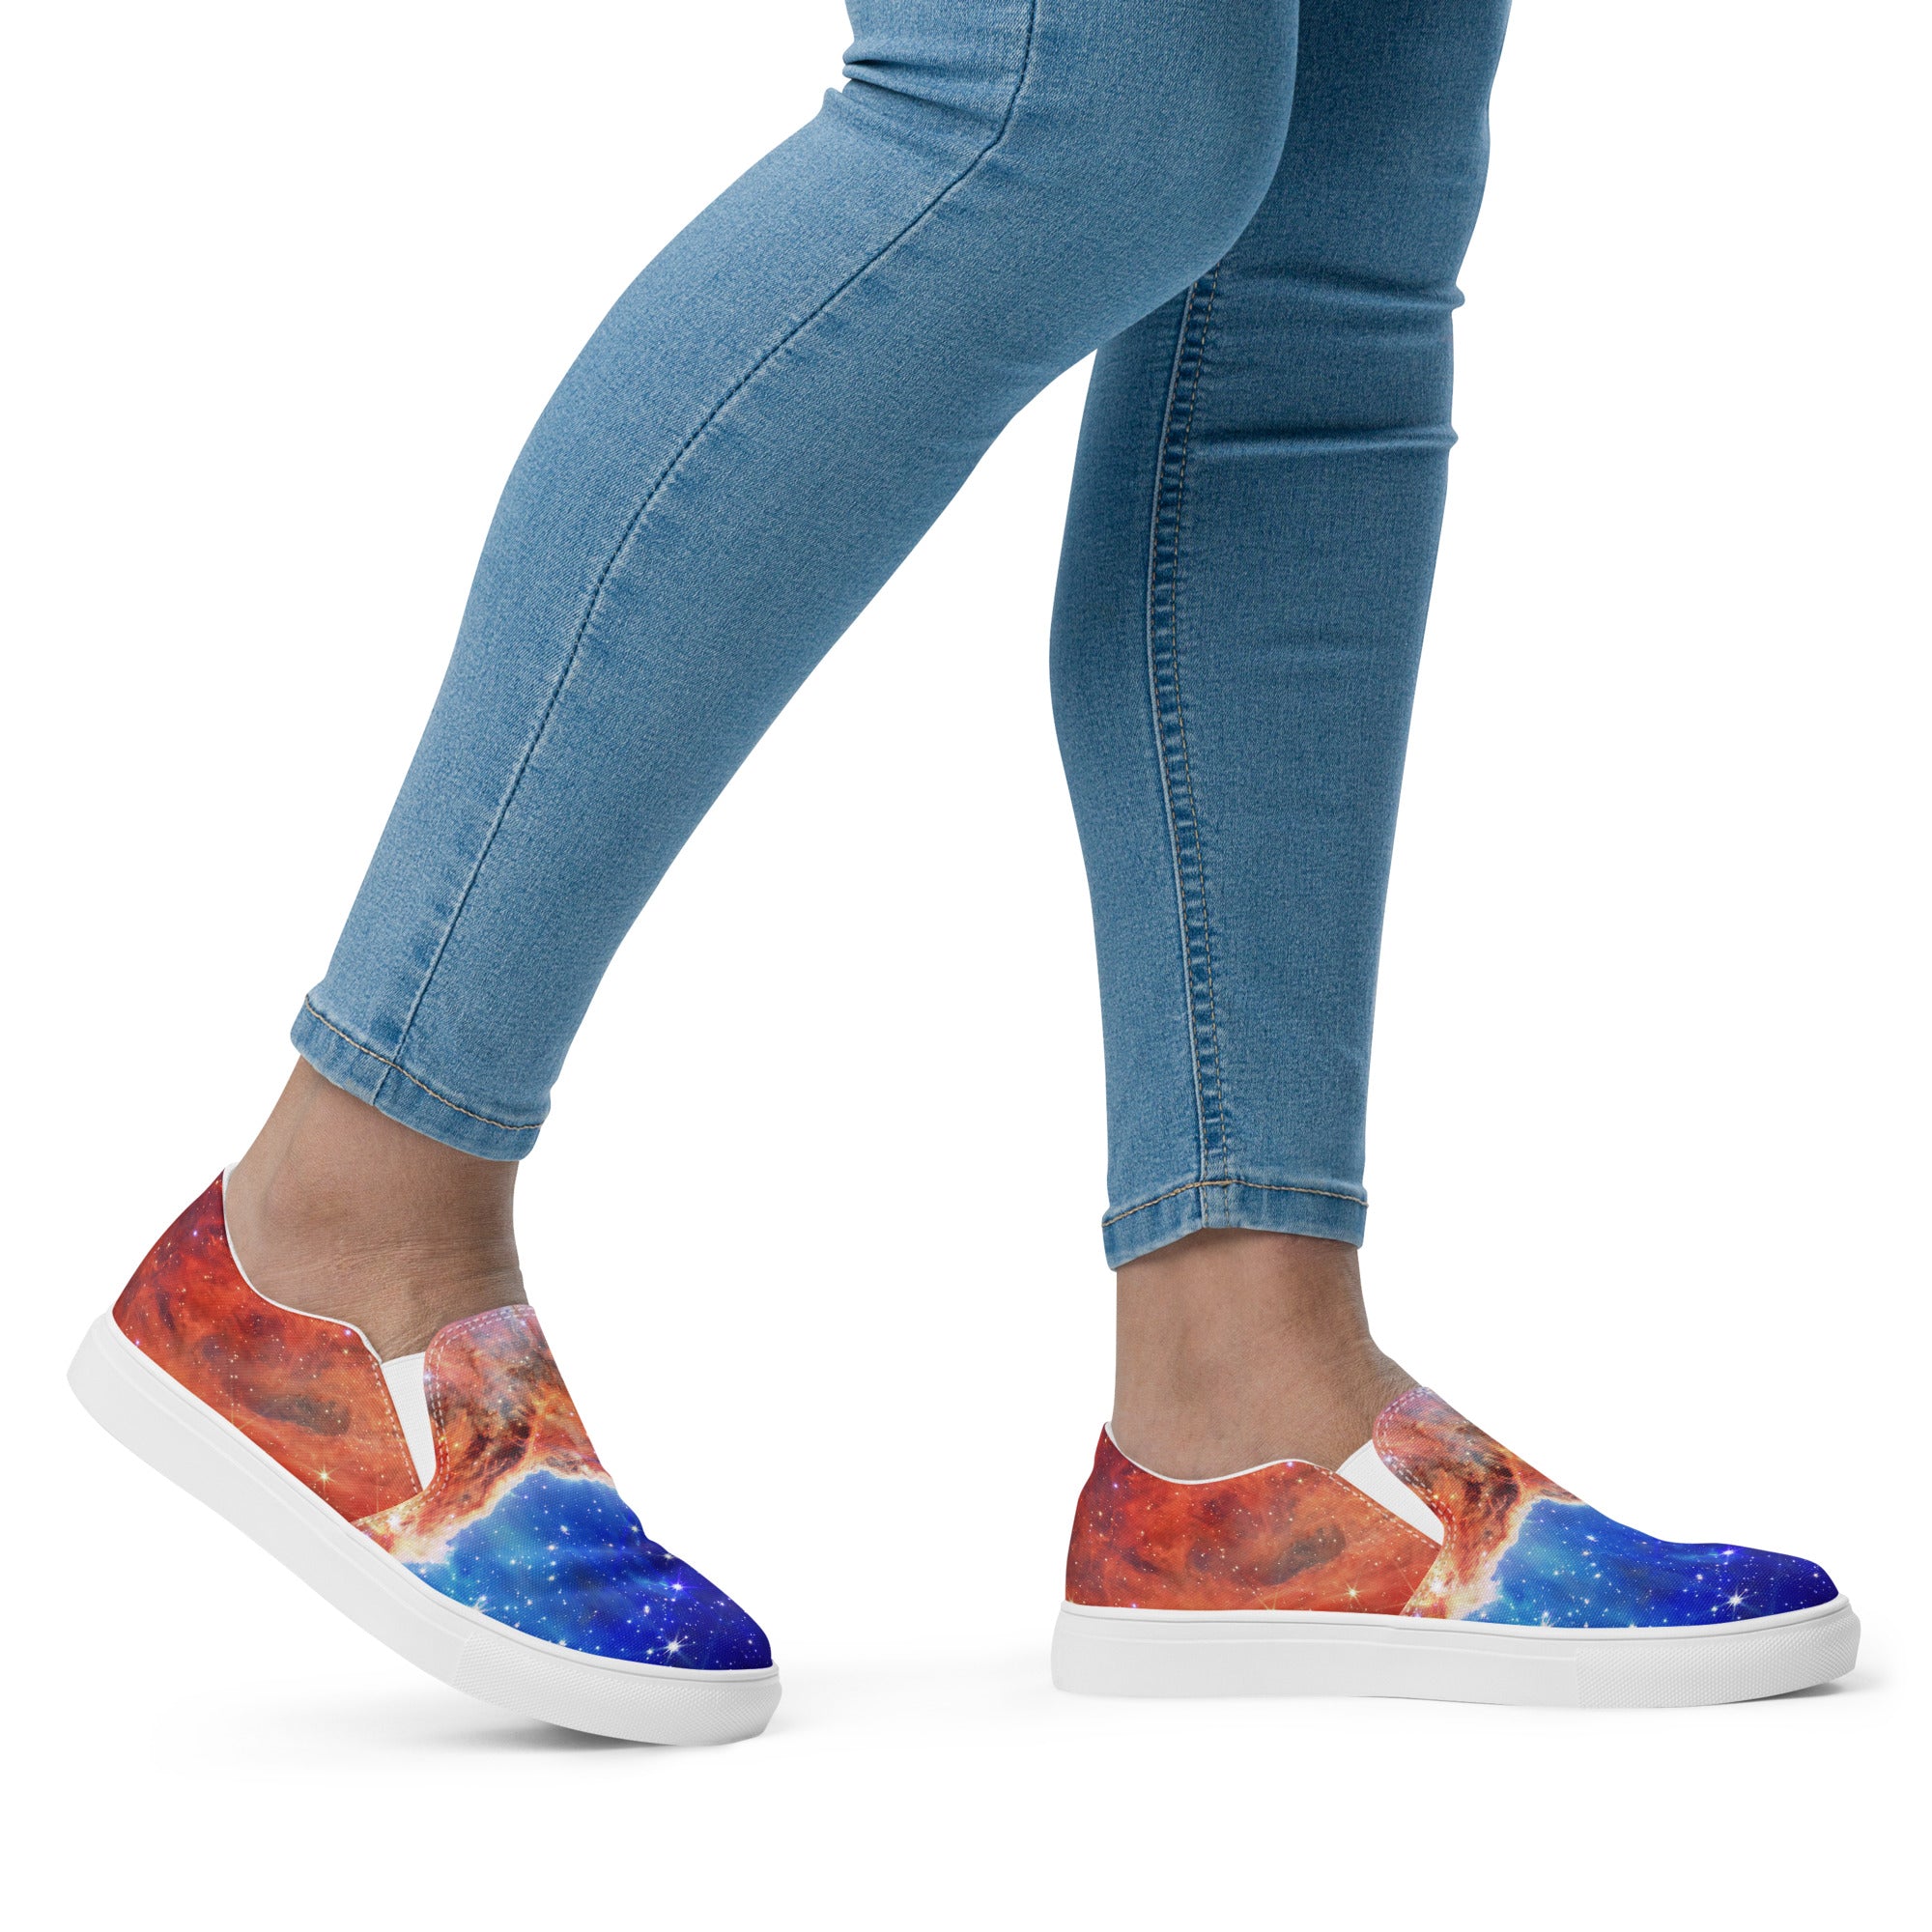 Carina Nebula Women’s Slip-On Canvas Shoes